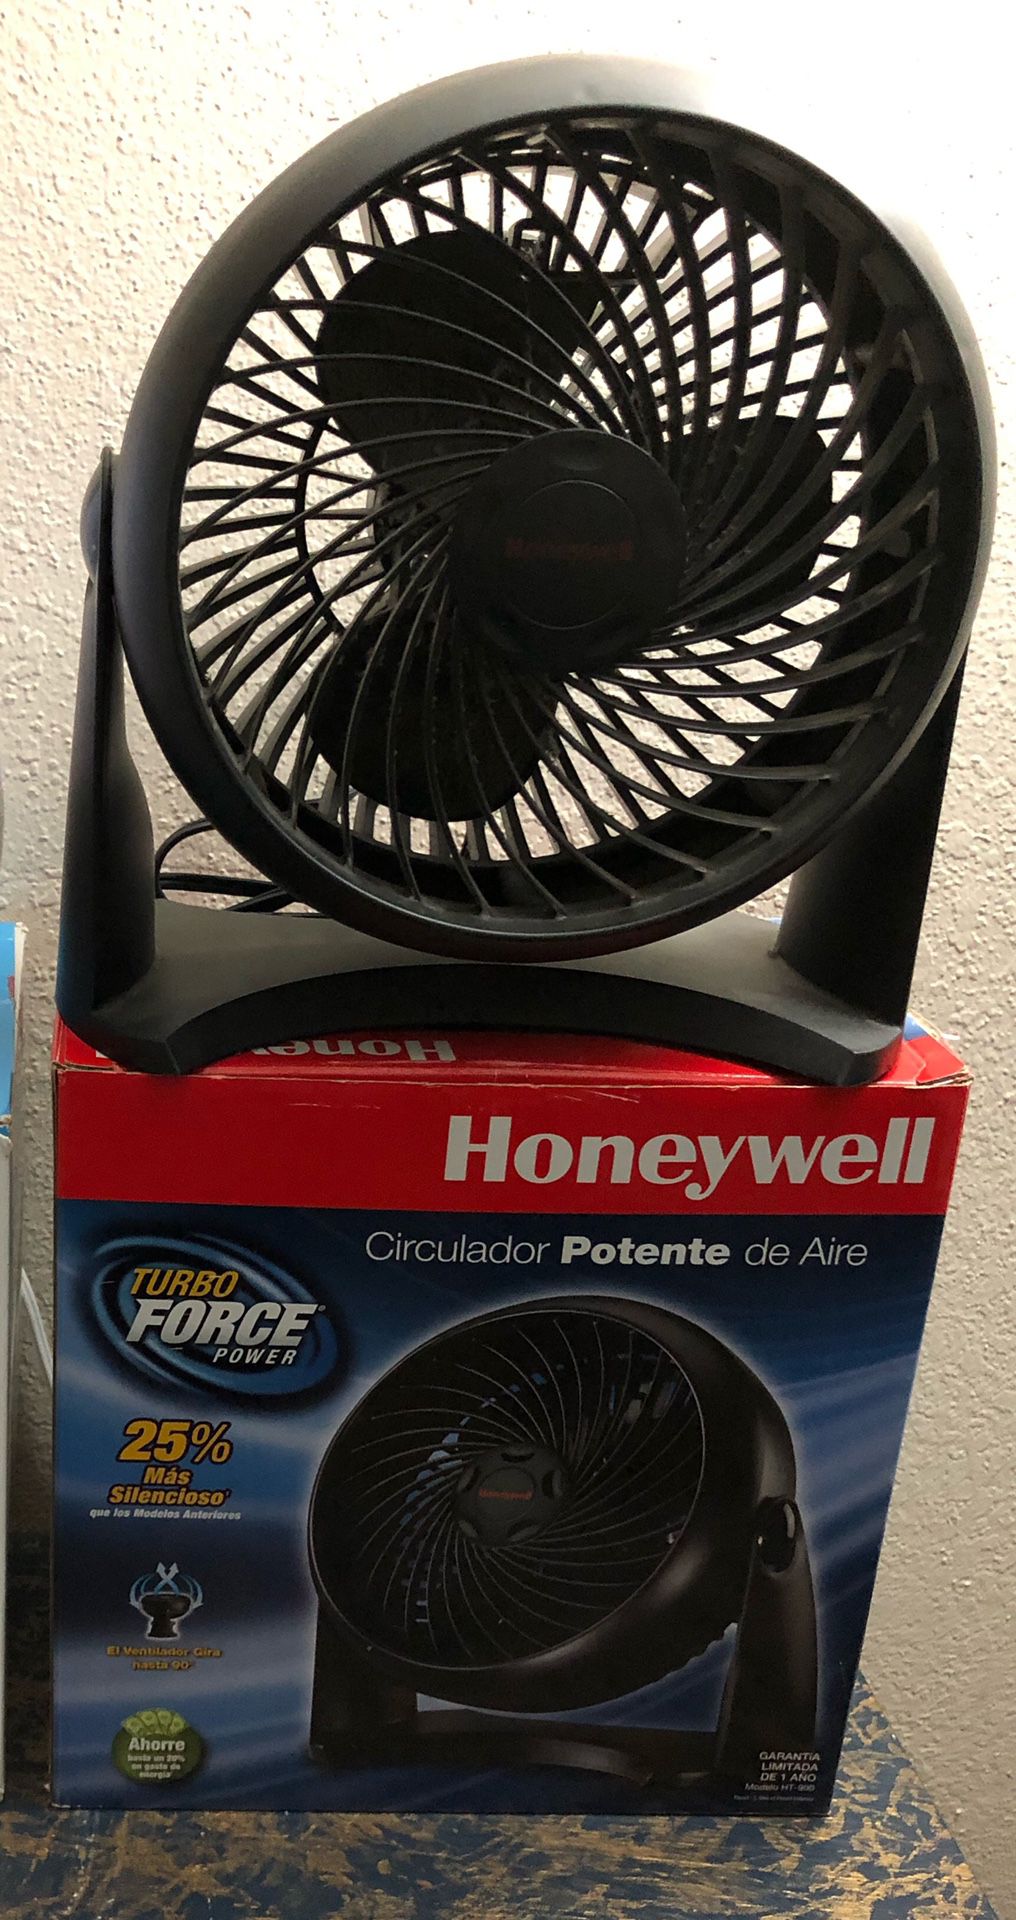 Honeywell cooler summer fan